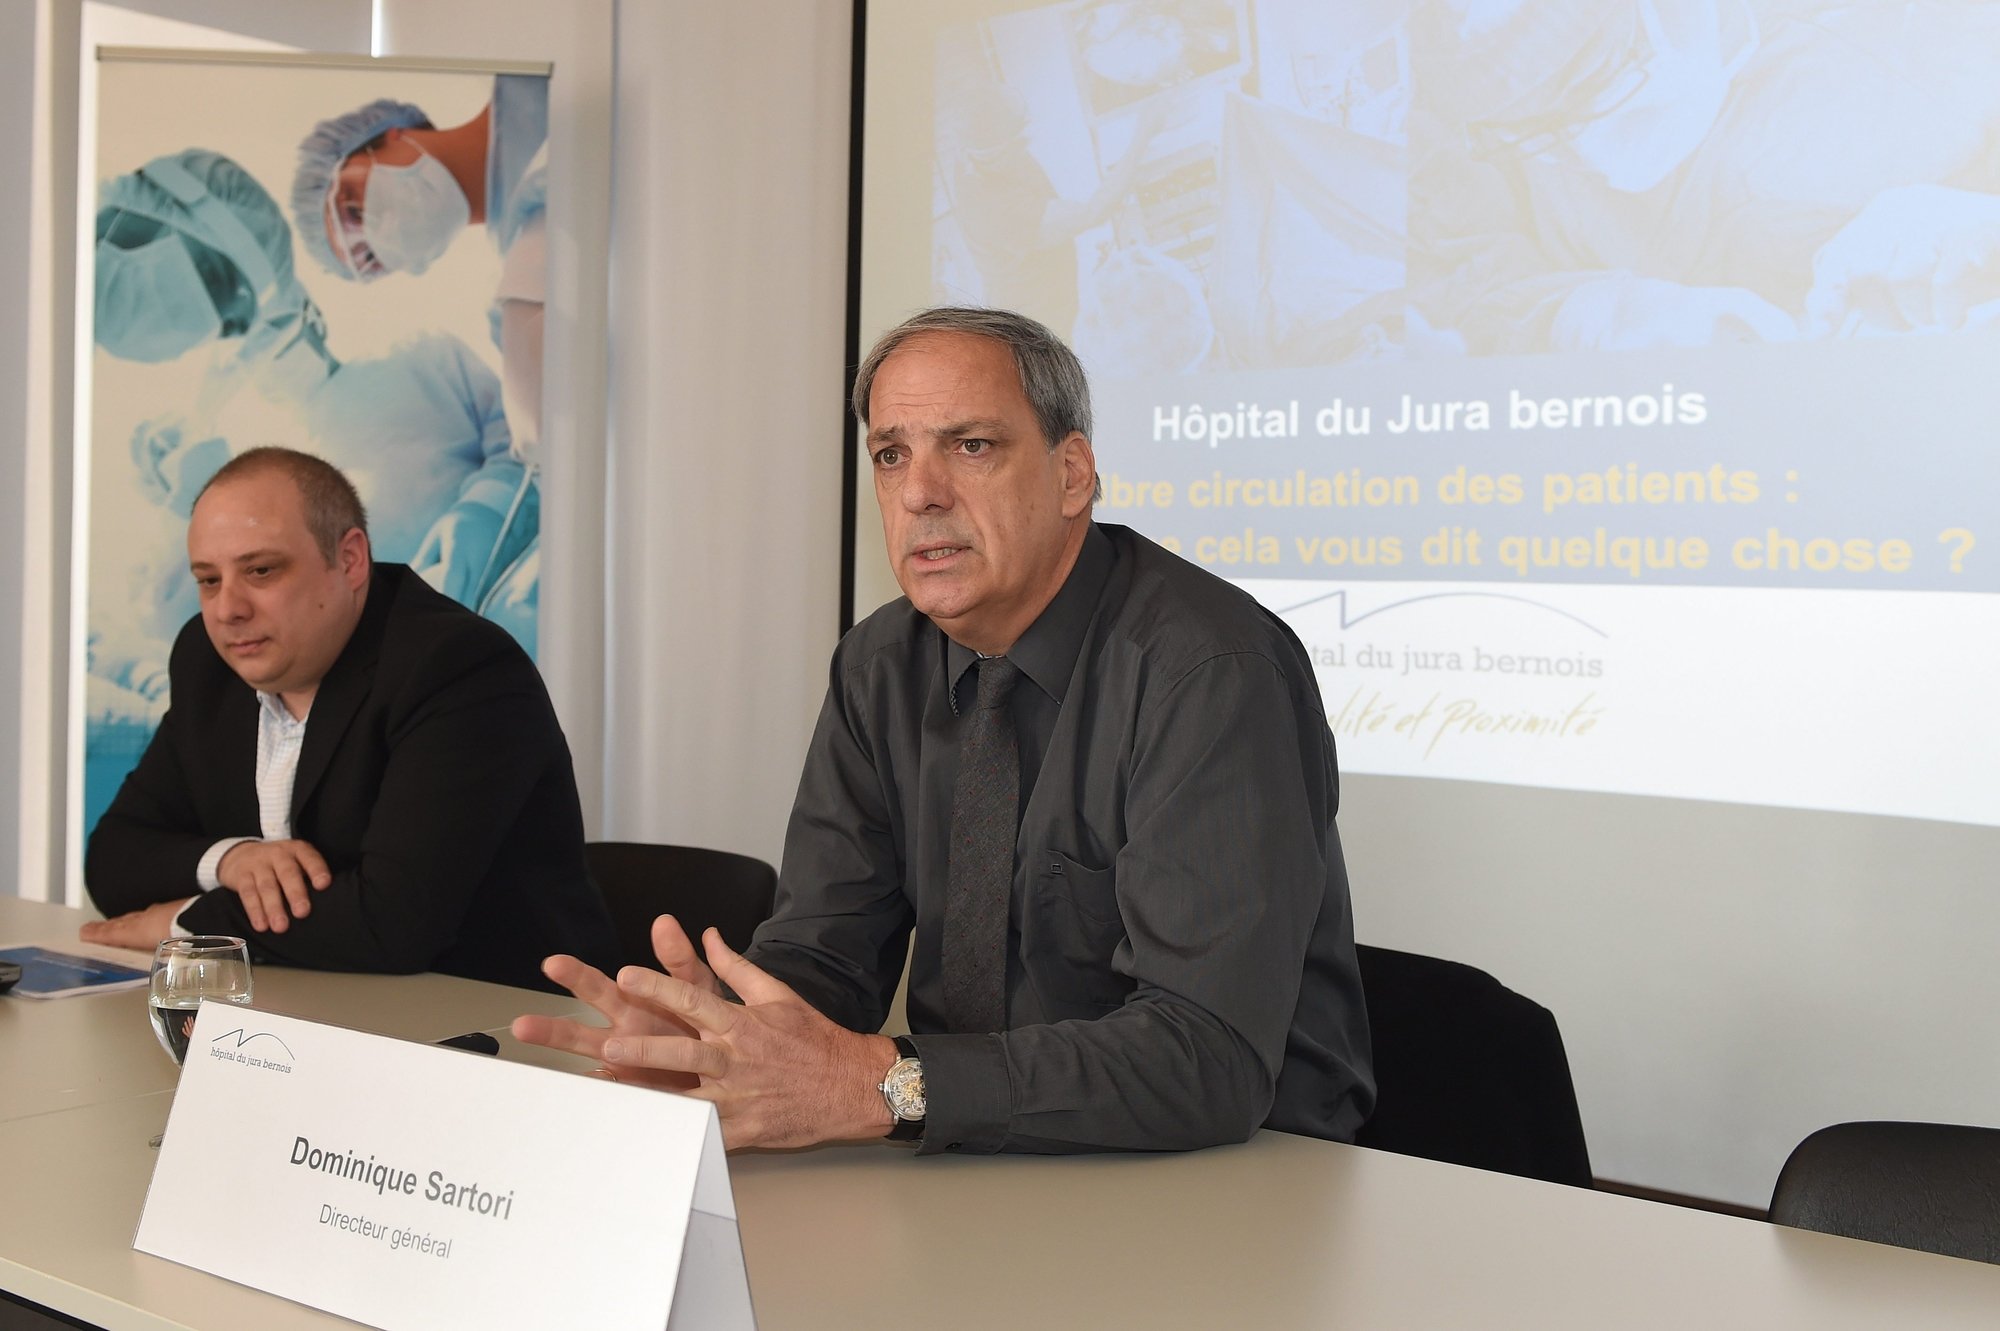 À droite, Dominique Sartori, directeur de l'Hôpital du Jura bernois.